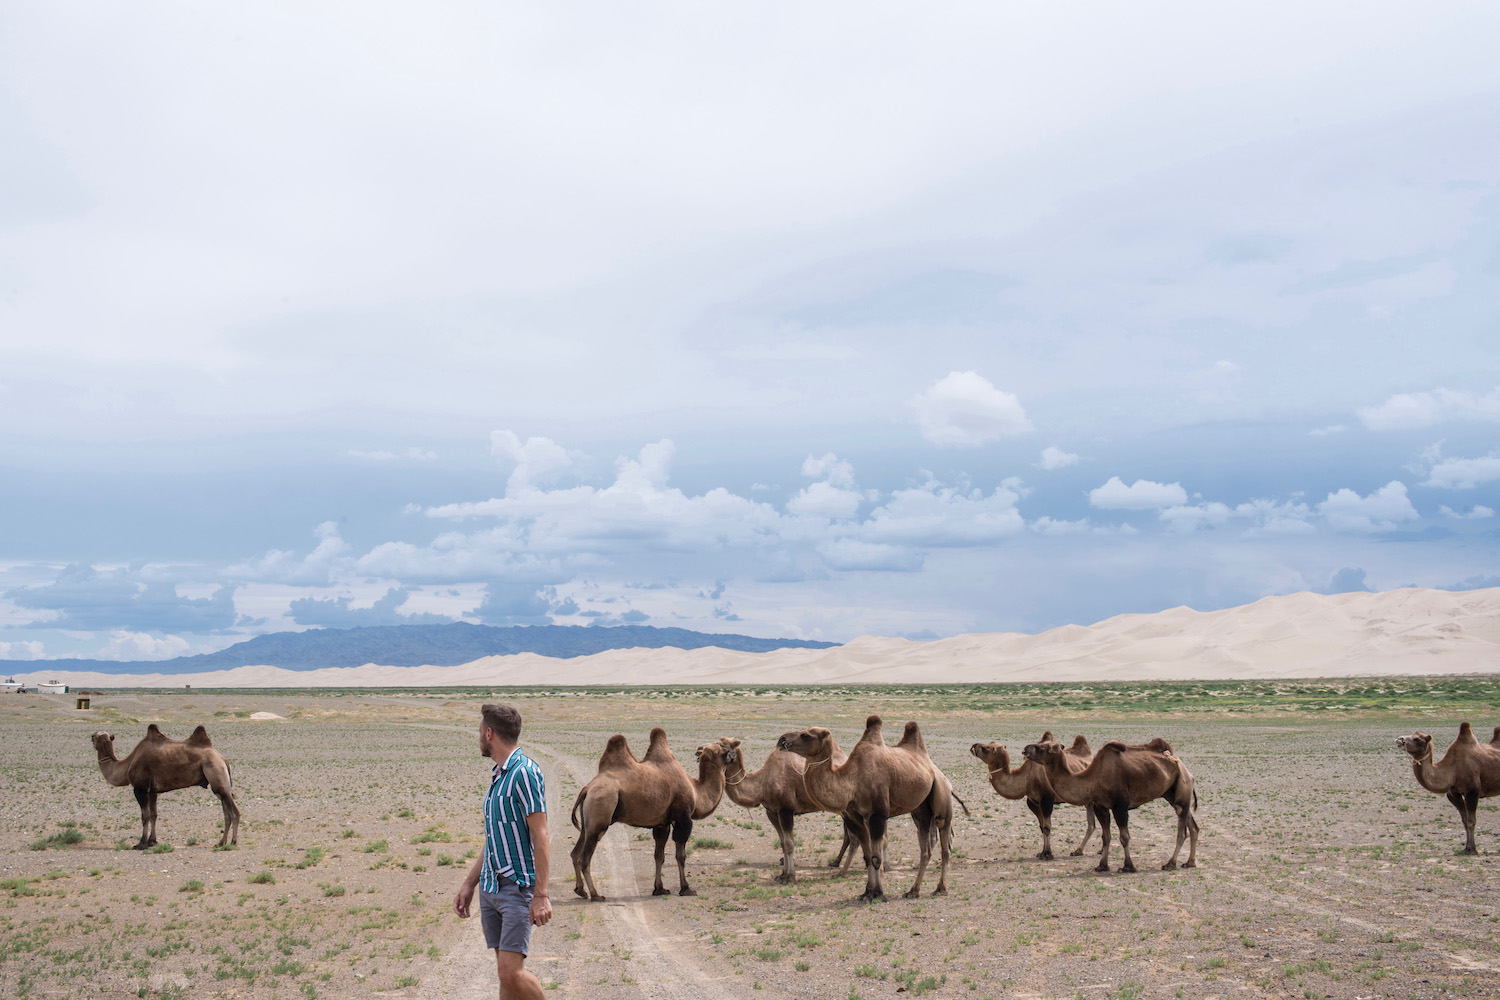 Robert Schrader in Mongolia's Gobi Desert